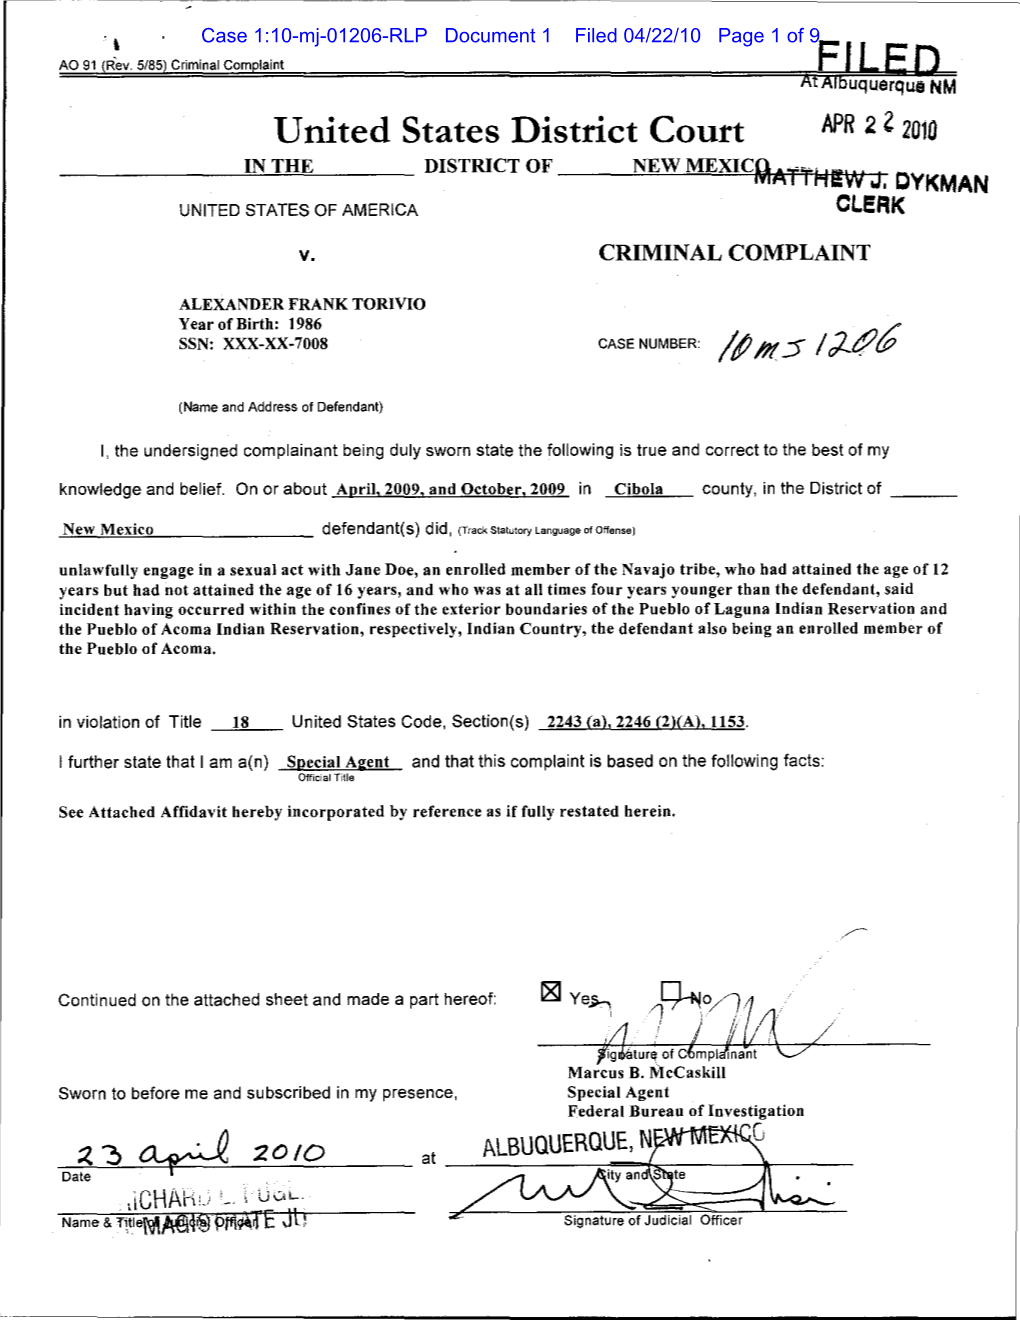 United States V. Alexander Frank Torivio; Criminal Complaint